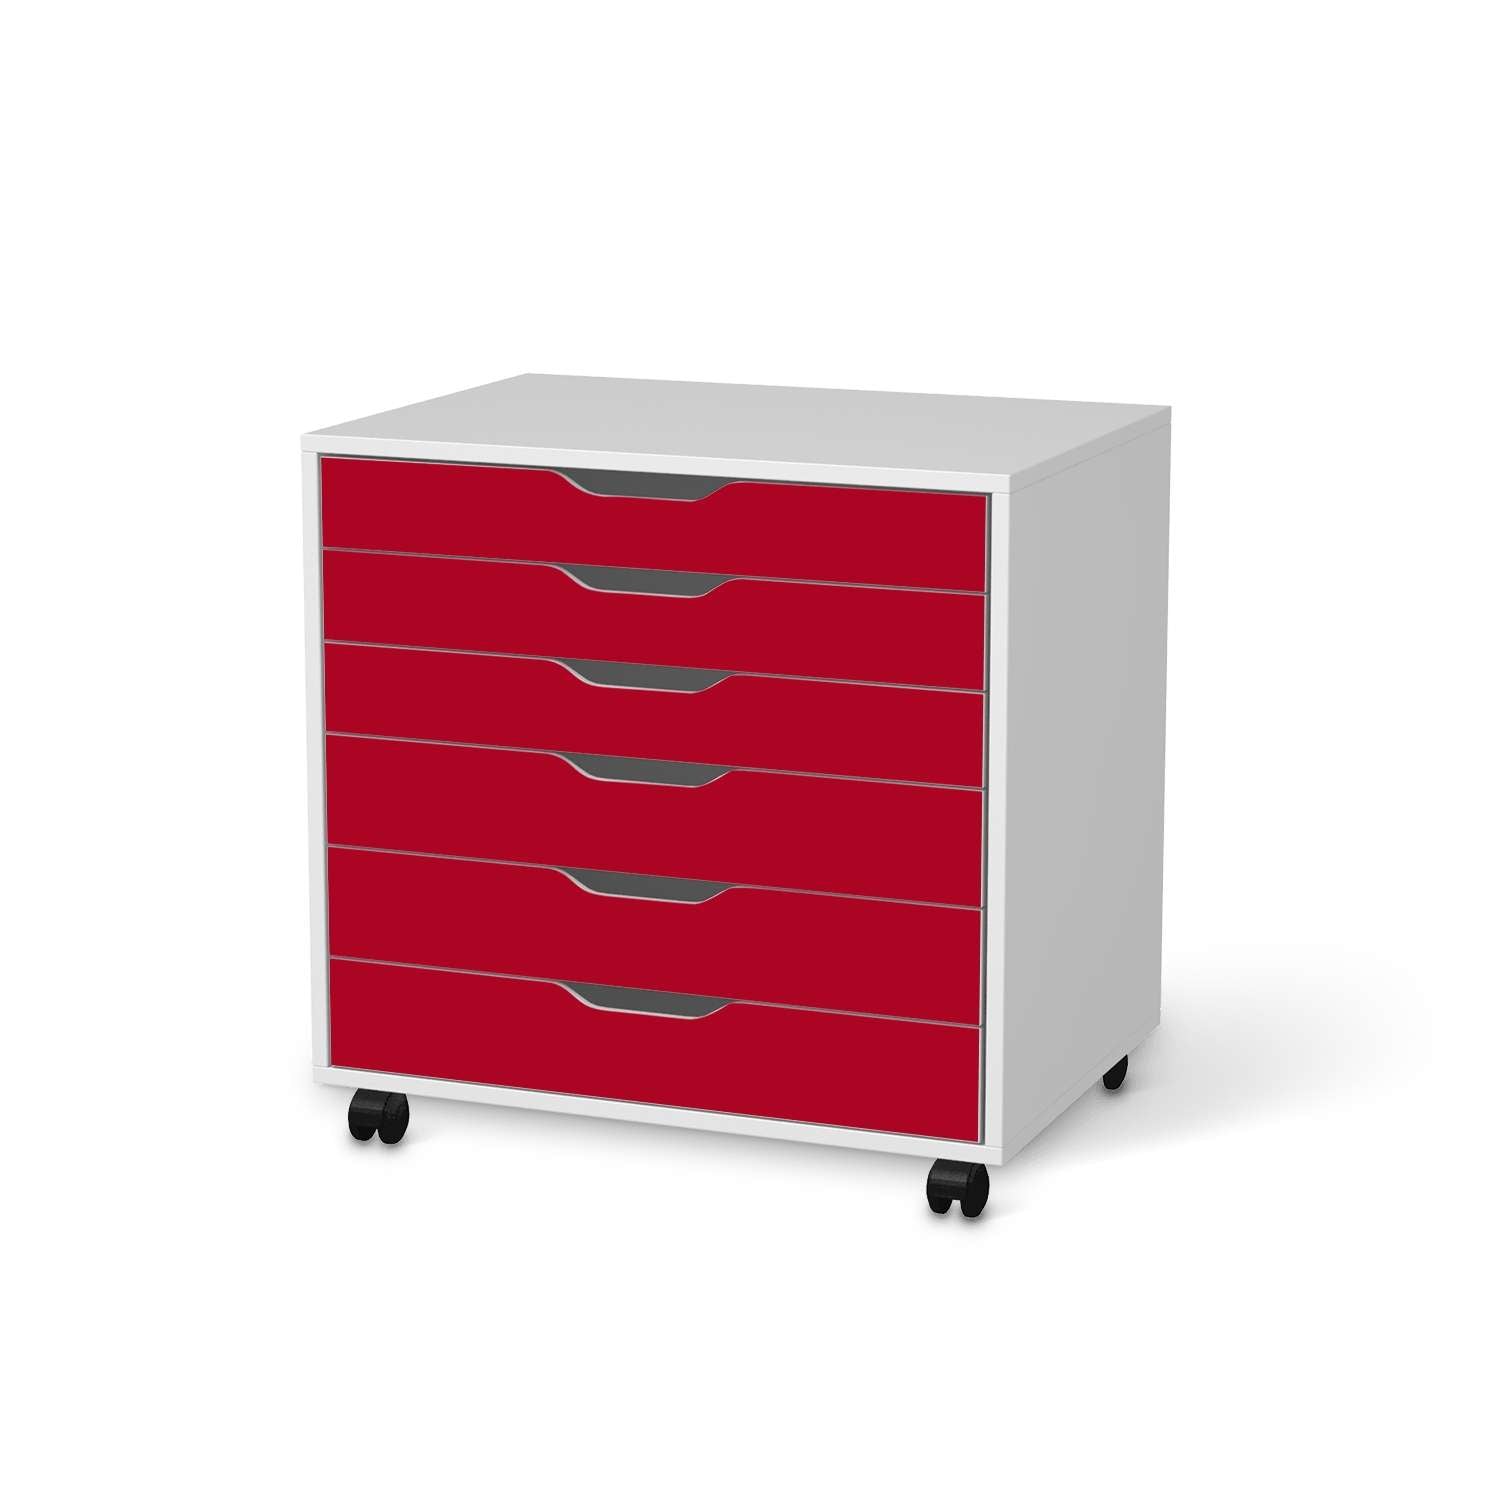 M?belfolie IKEA Alex Rollcontainer 6 Schubladen - Design: Rot Dark von creatisto